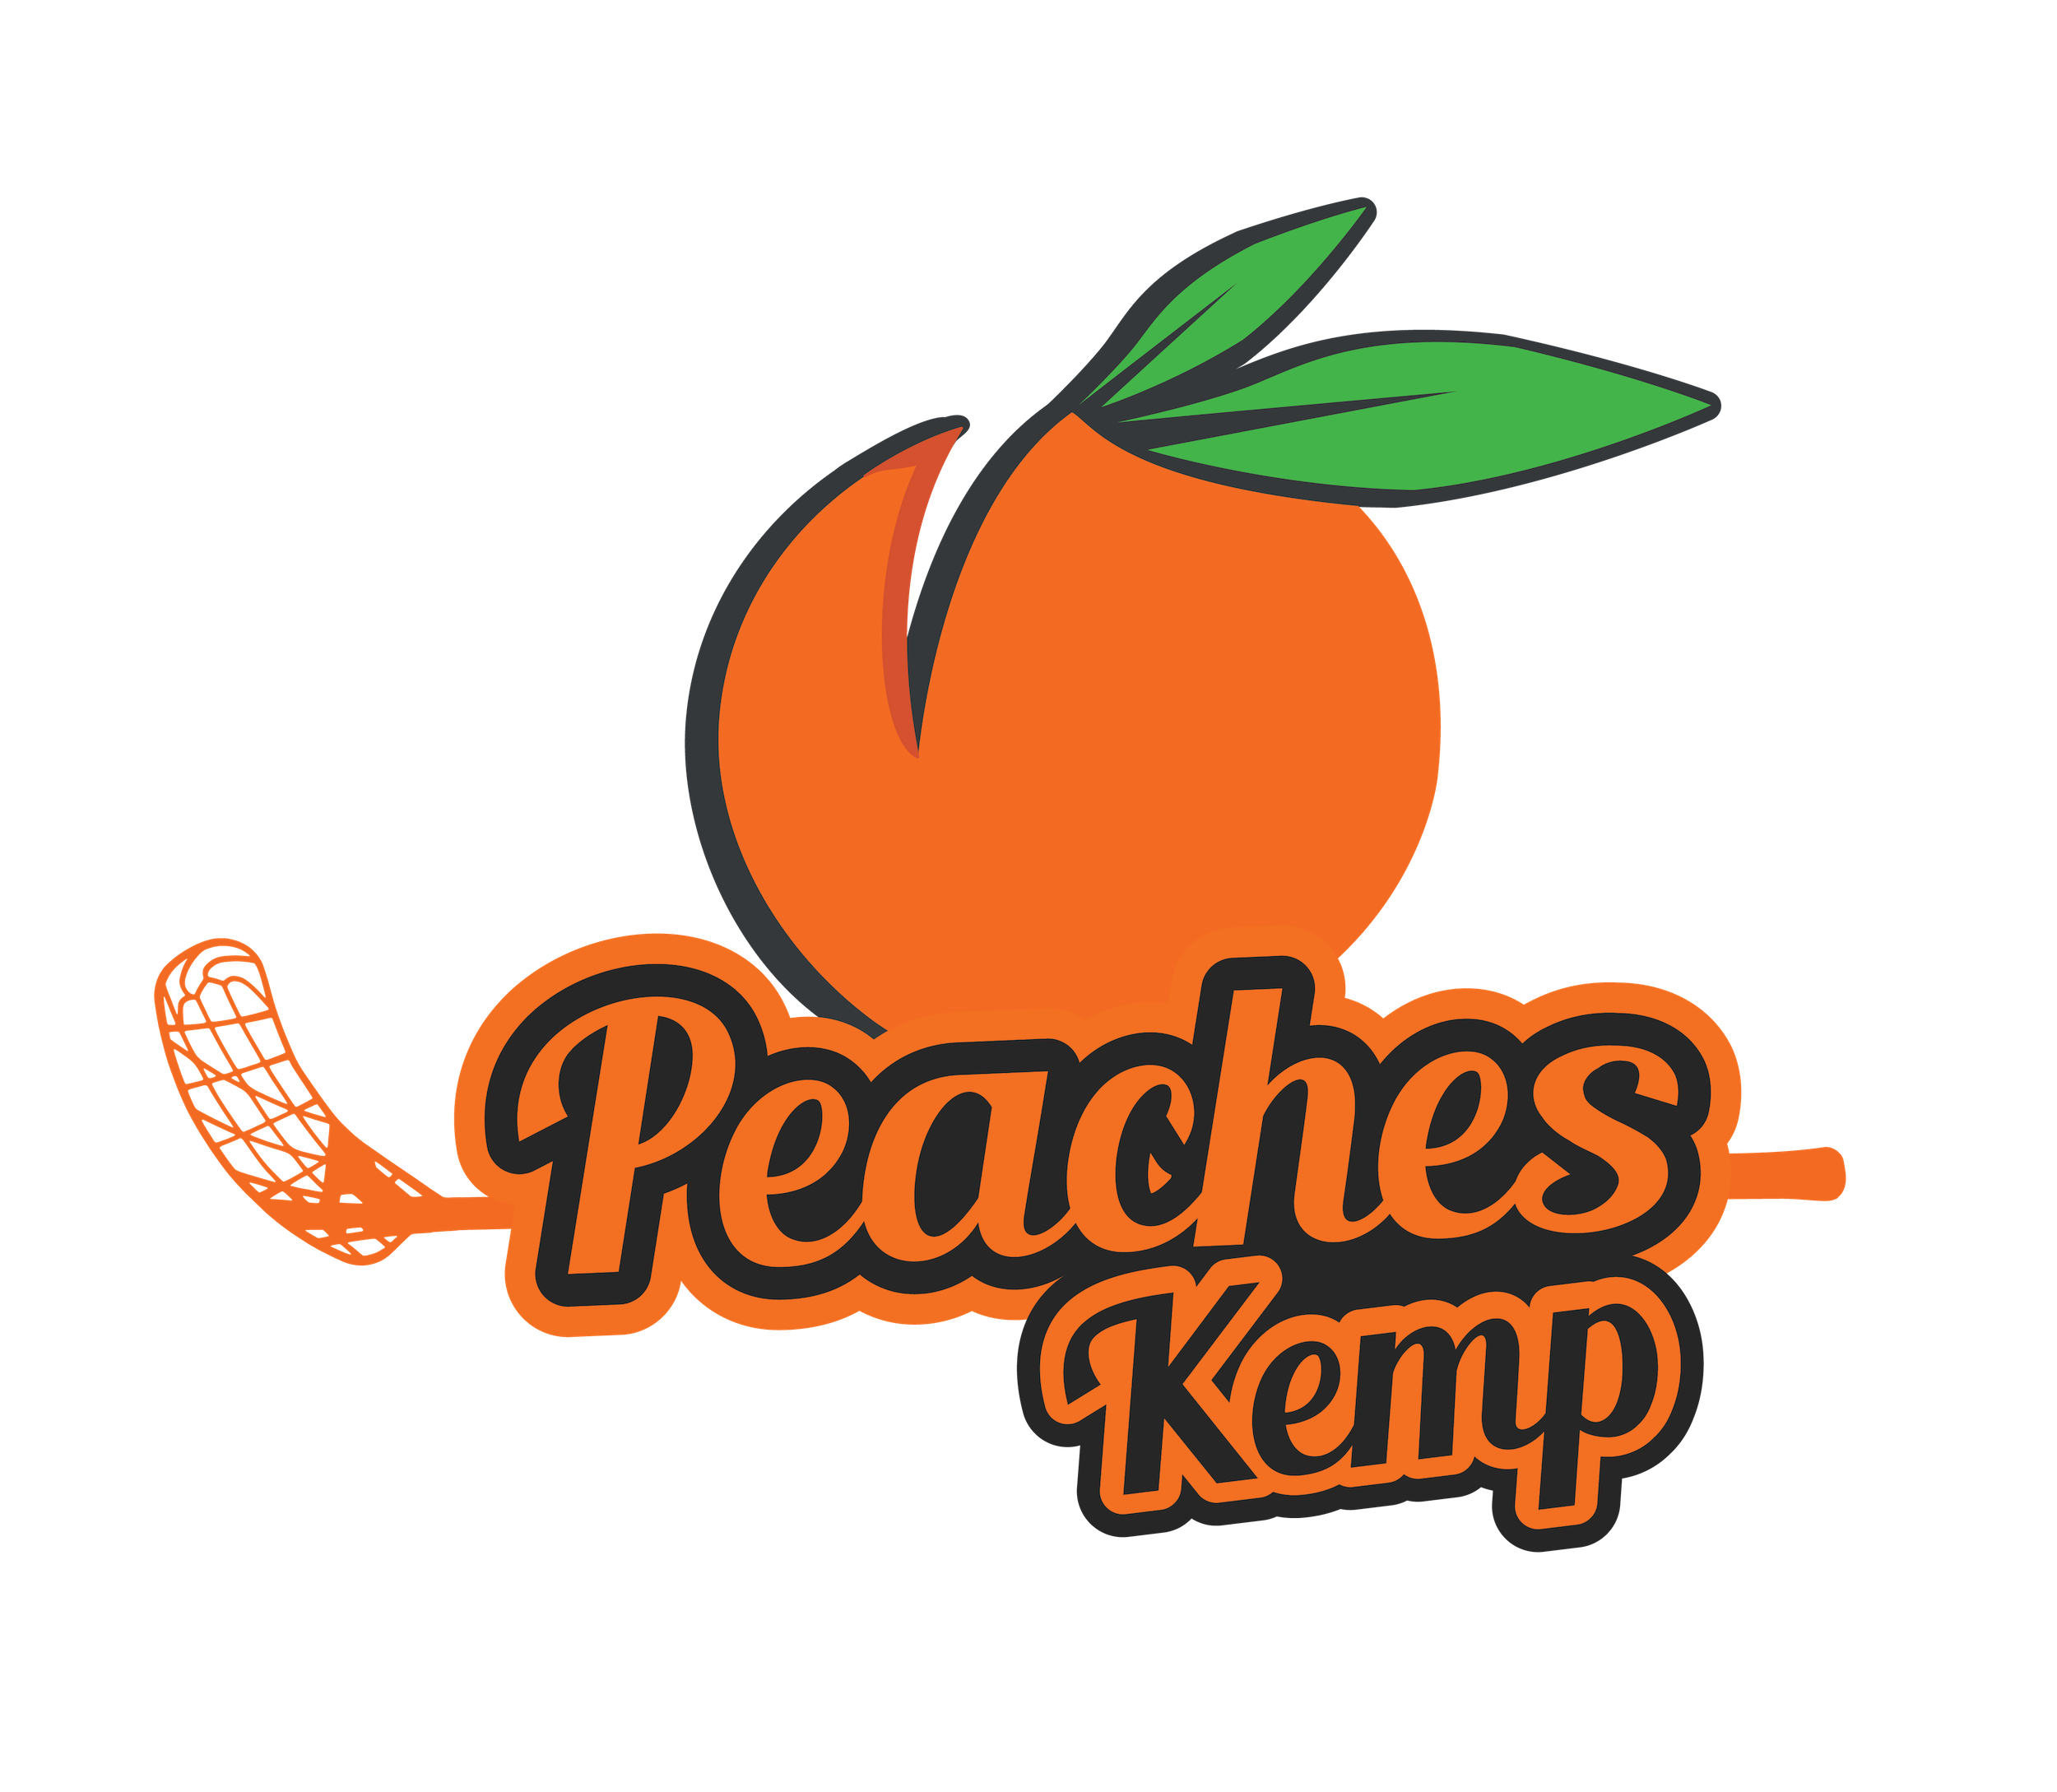 Peaches KEMP